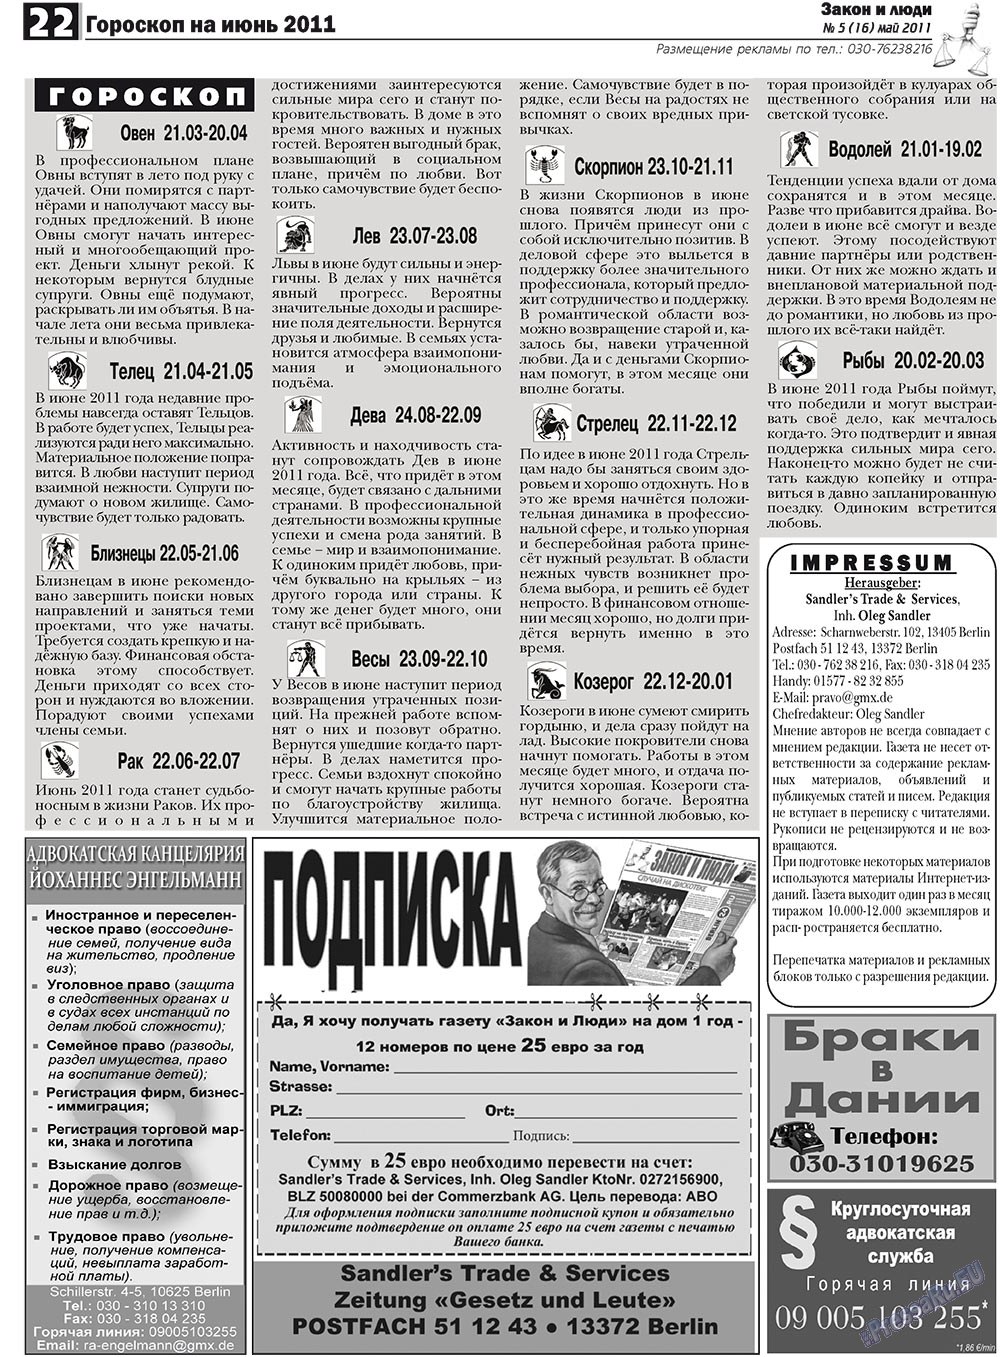 Закон и люди, газета. 2011 №5 стр.22